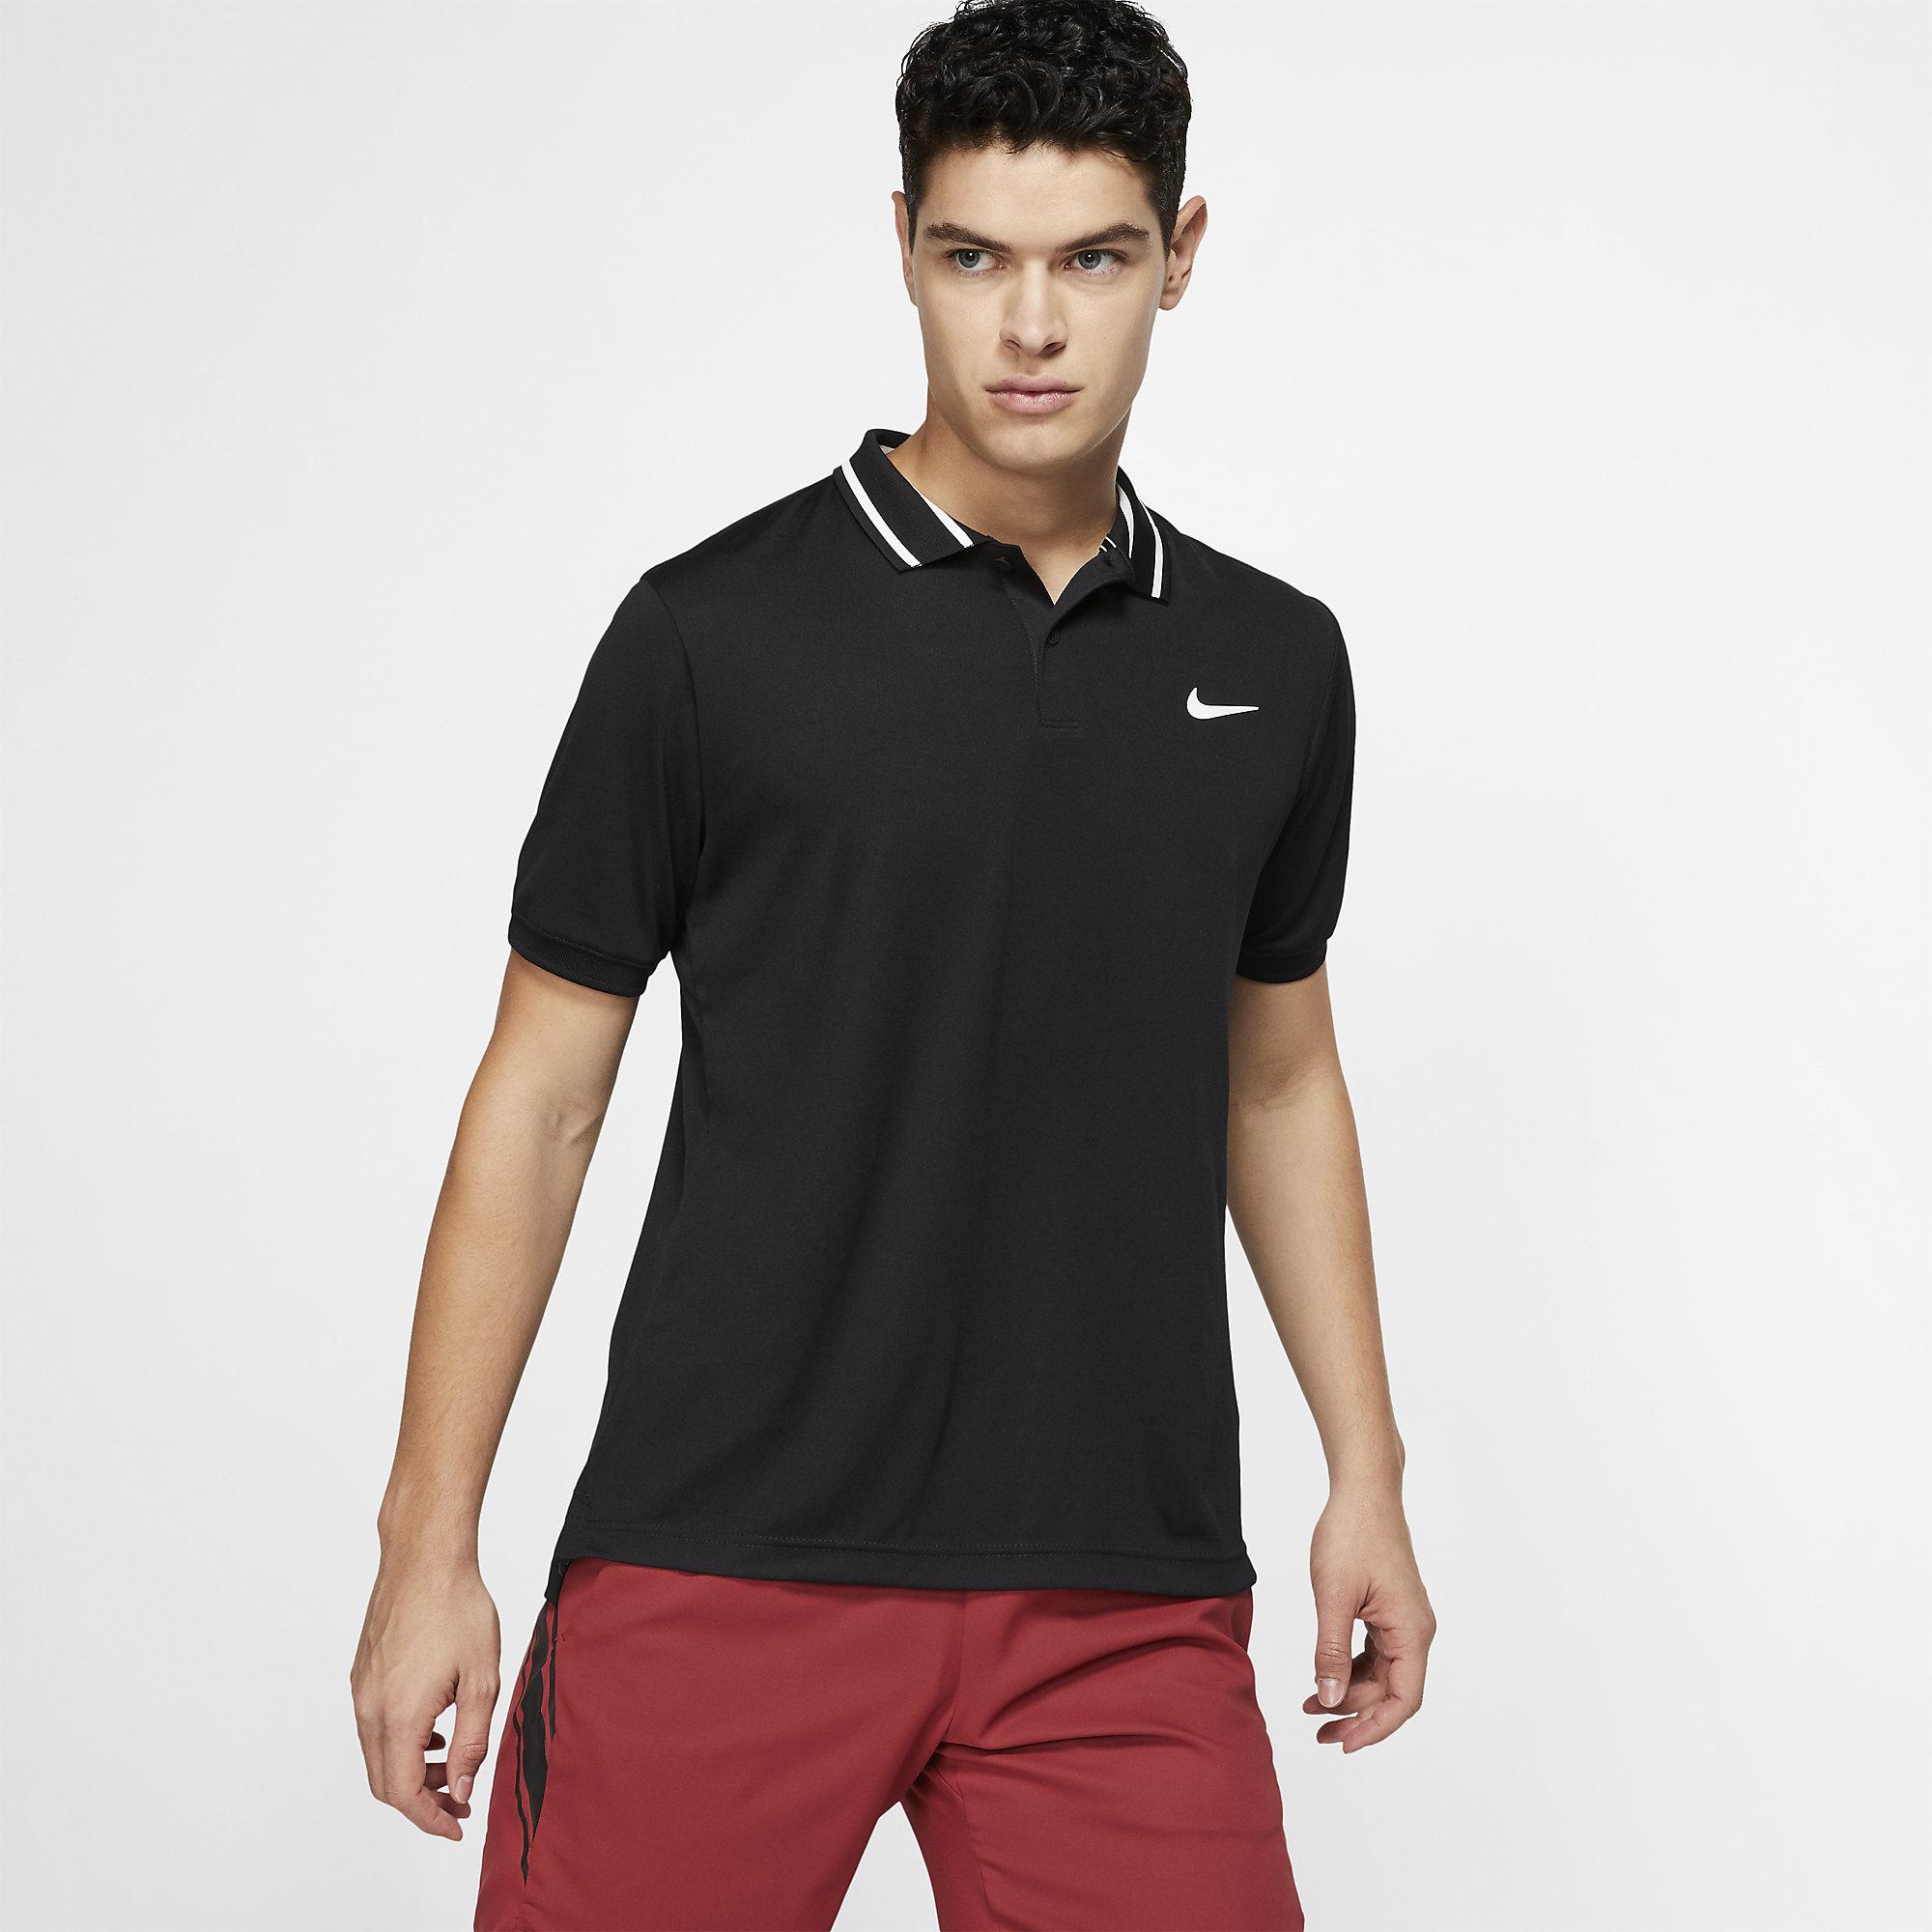 Nike Mens Dri-FIT Tennis Polo - Black/White - Tennisnuts.com